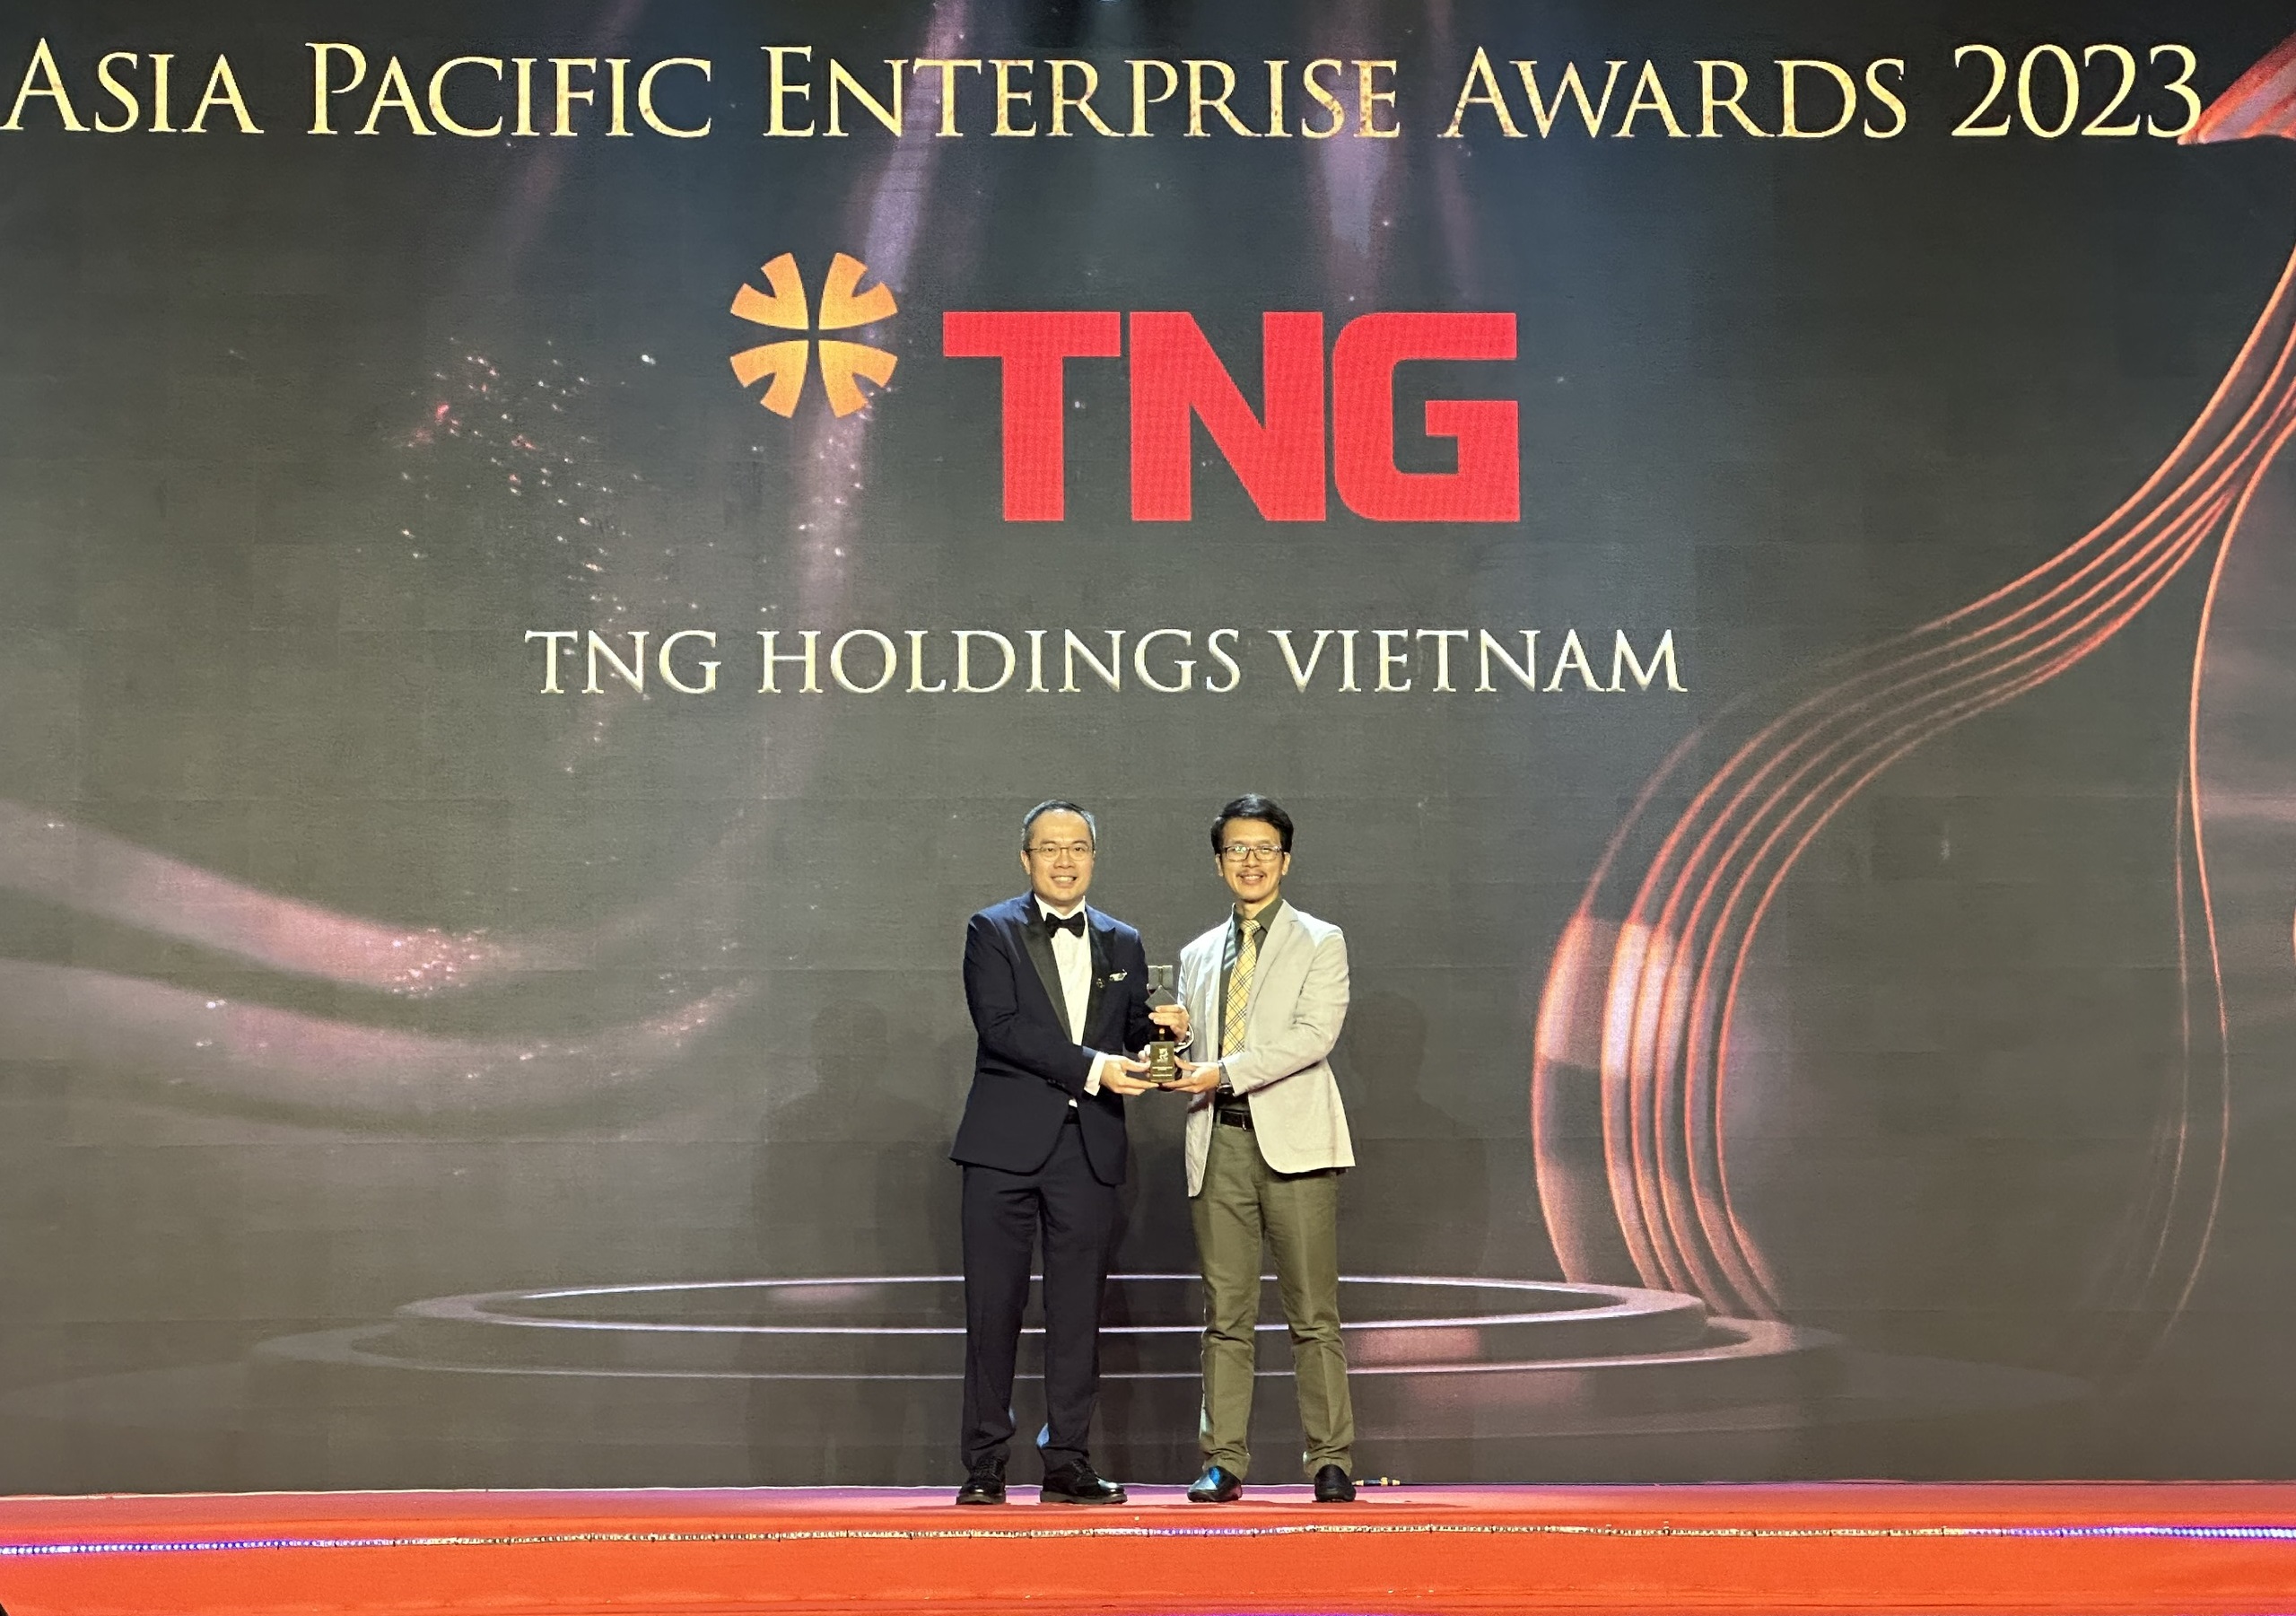 Chăm chút trải nghiệm, TNG Holdings Vietnam trở thành 